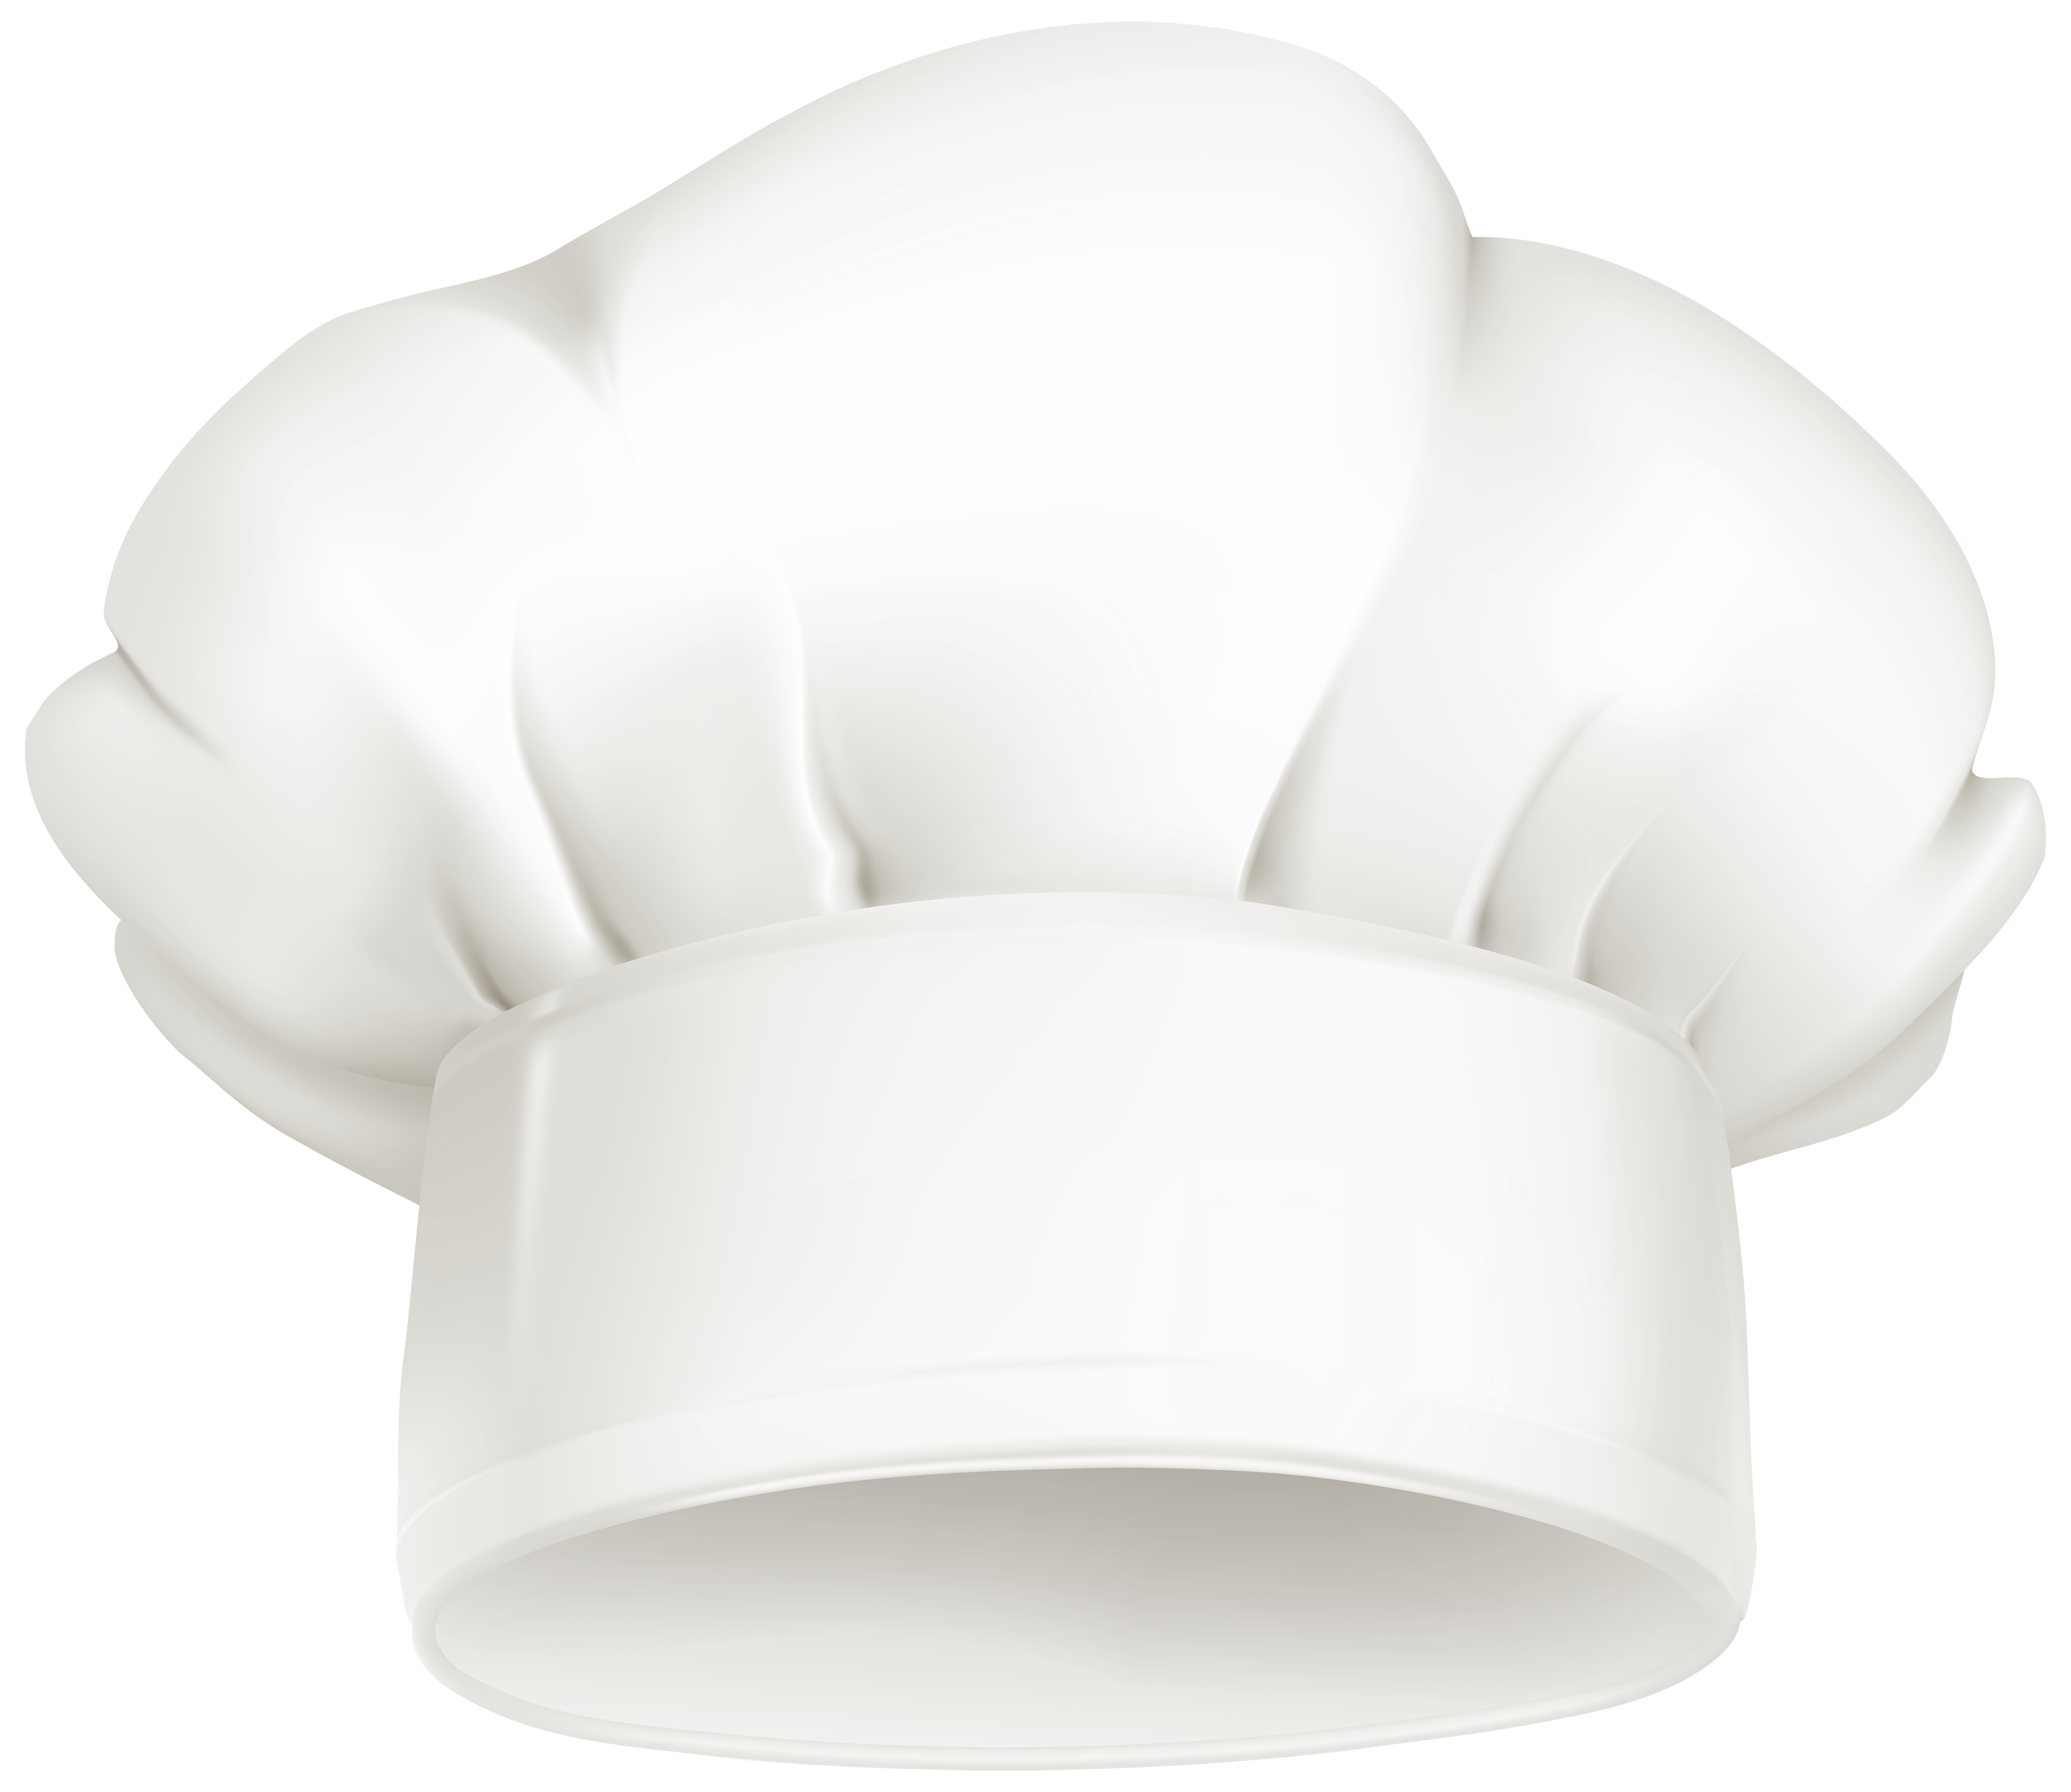 Fondo de imagen de PNG del sombrero de chef